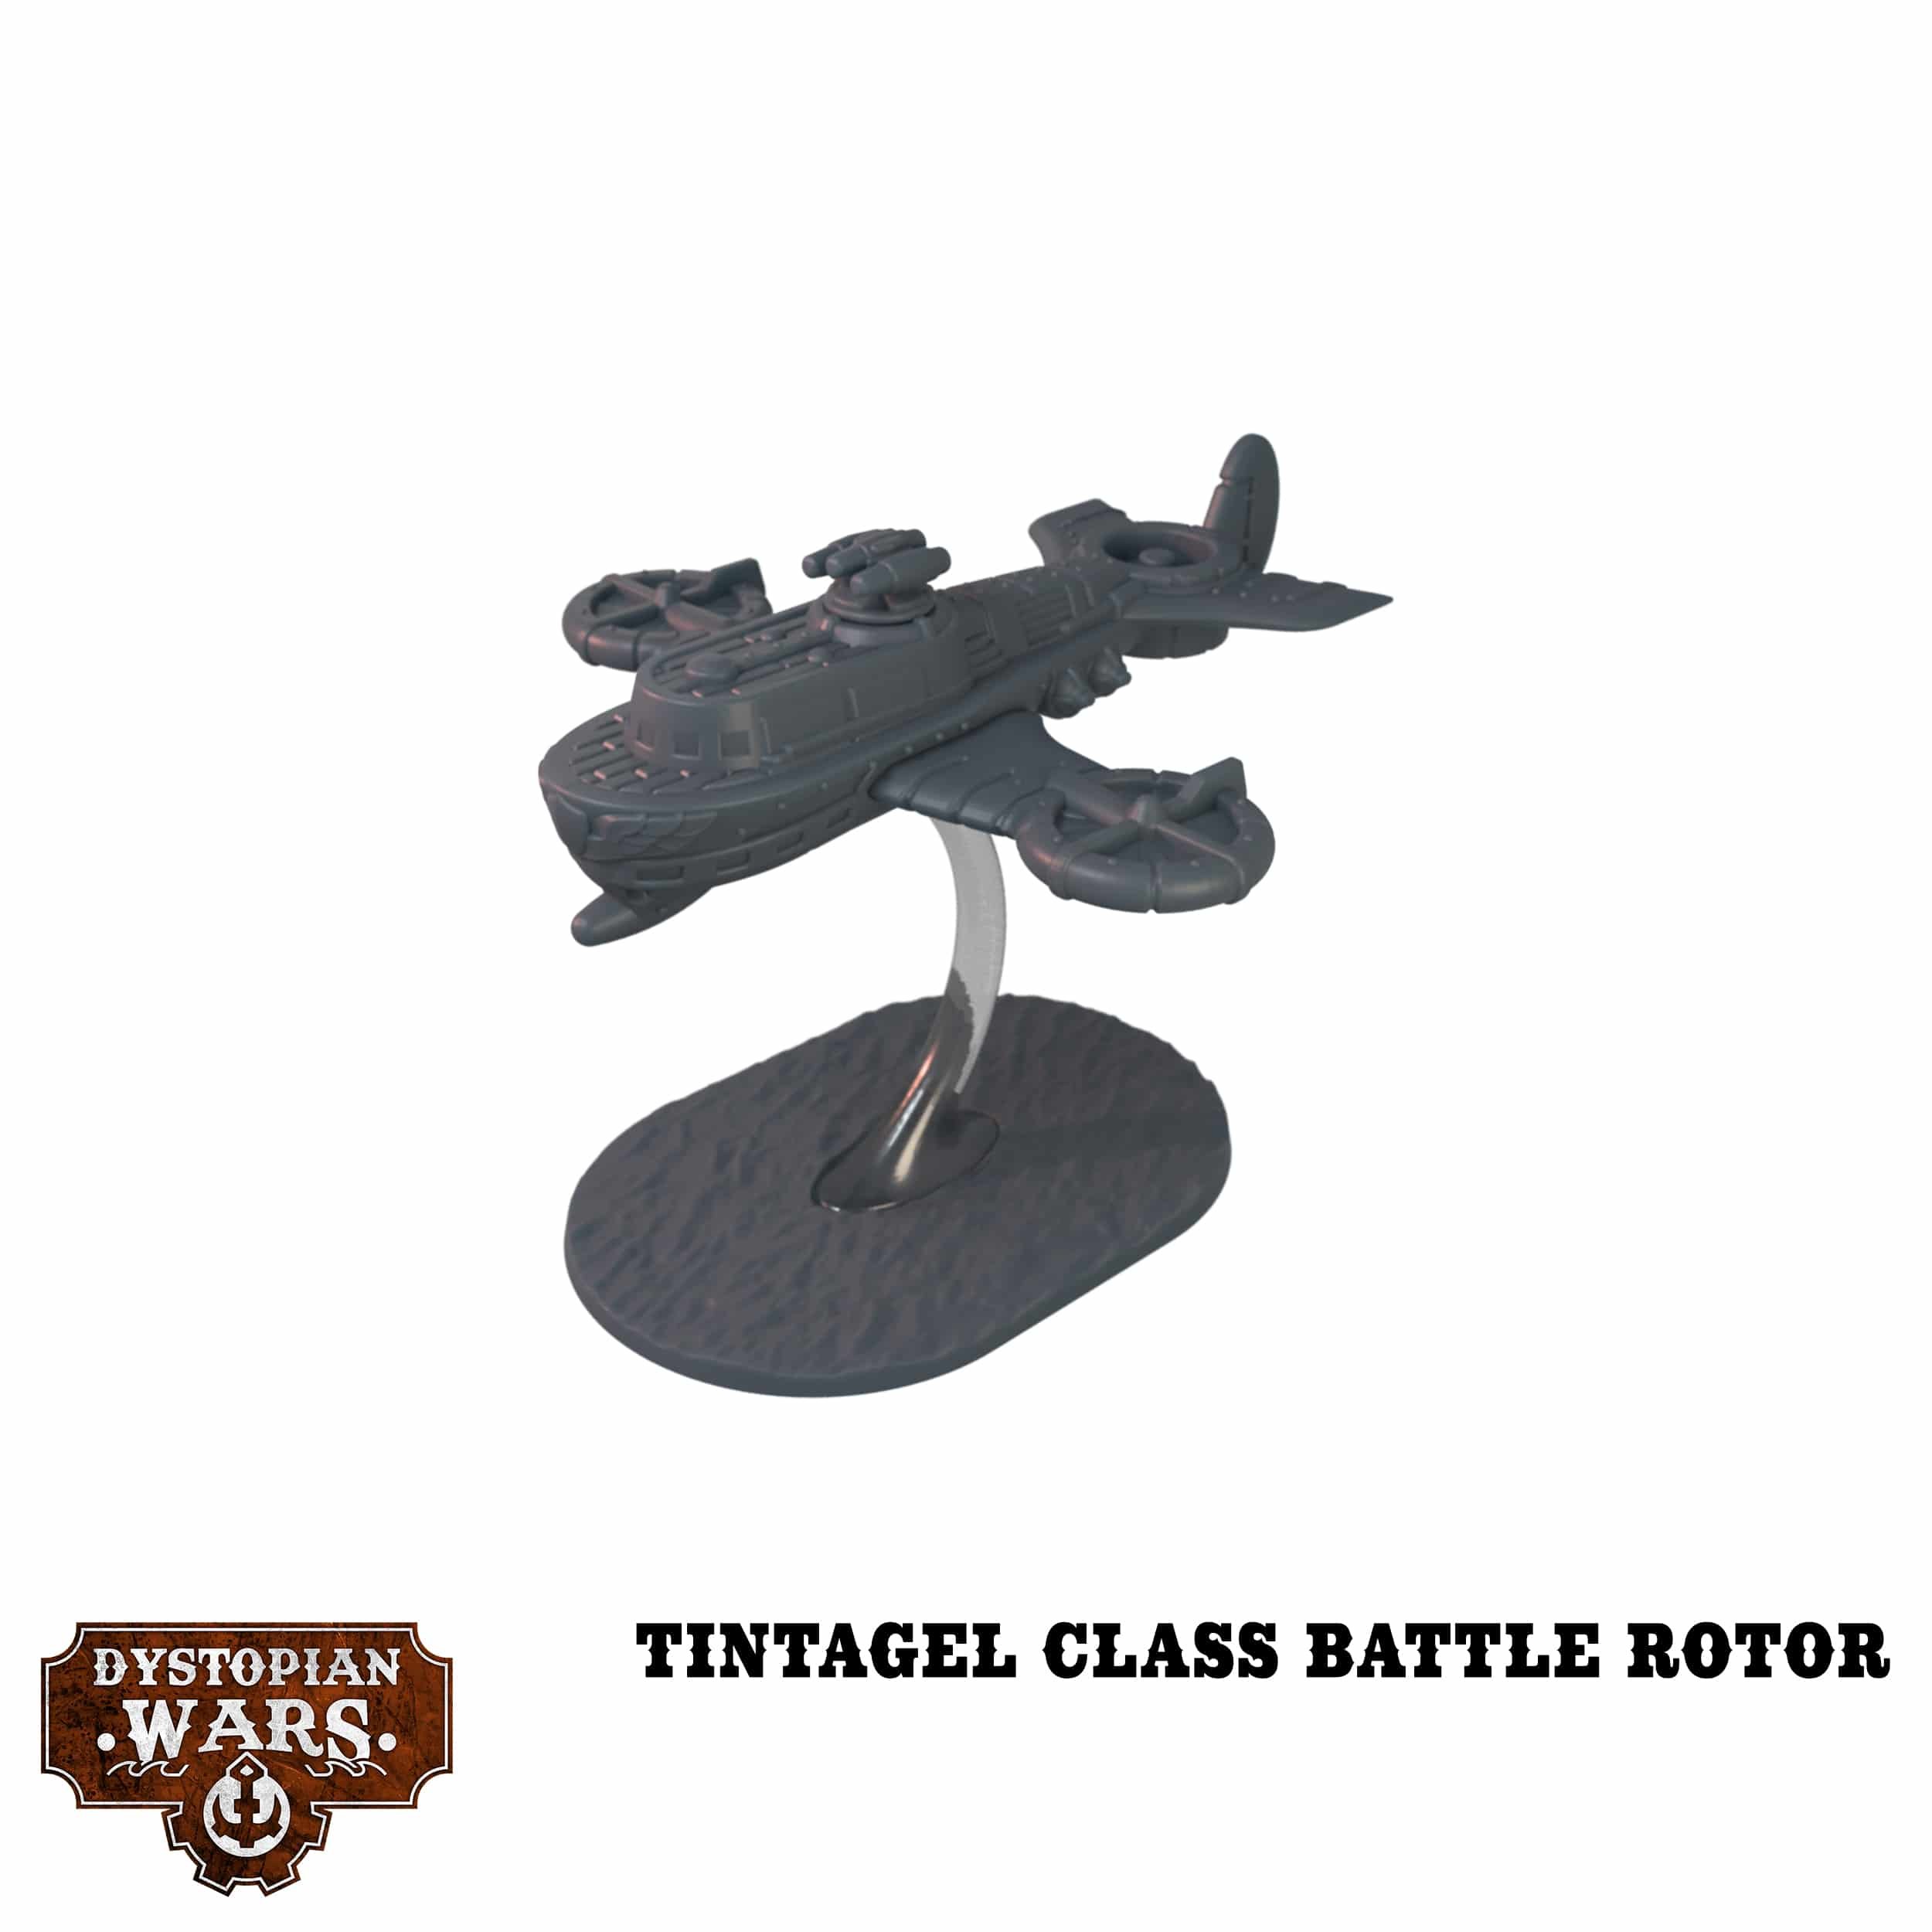 Tintagel Class Battle Rotor - Dystopian Wars